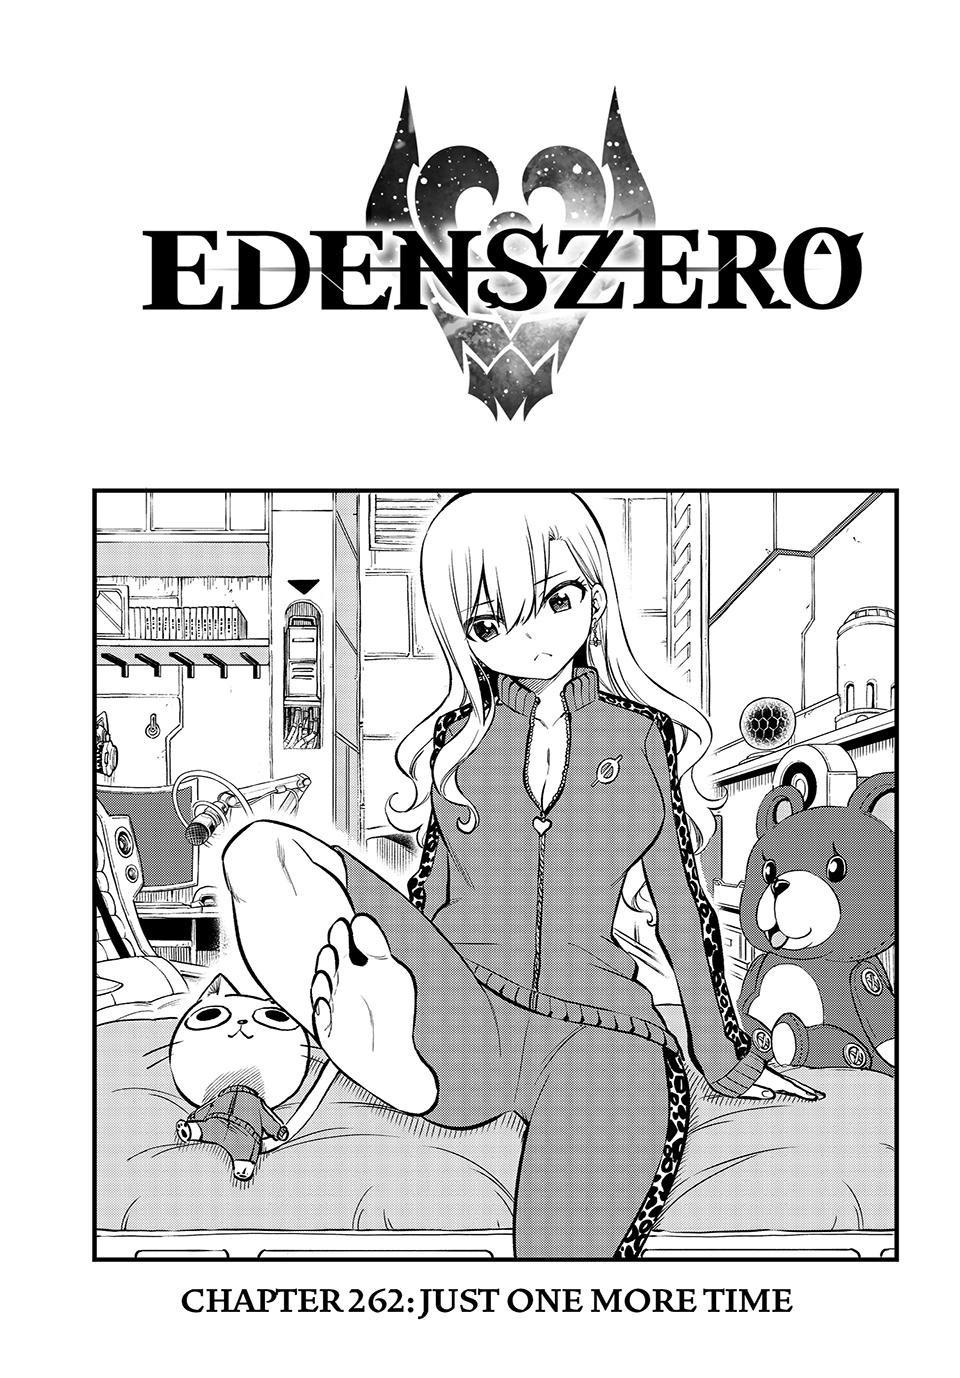 Eden's Zero, Chapter 175 - English Scans